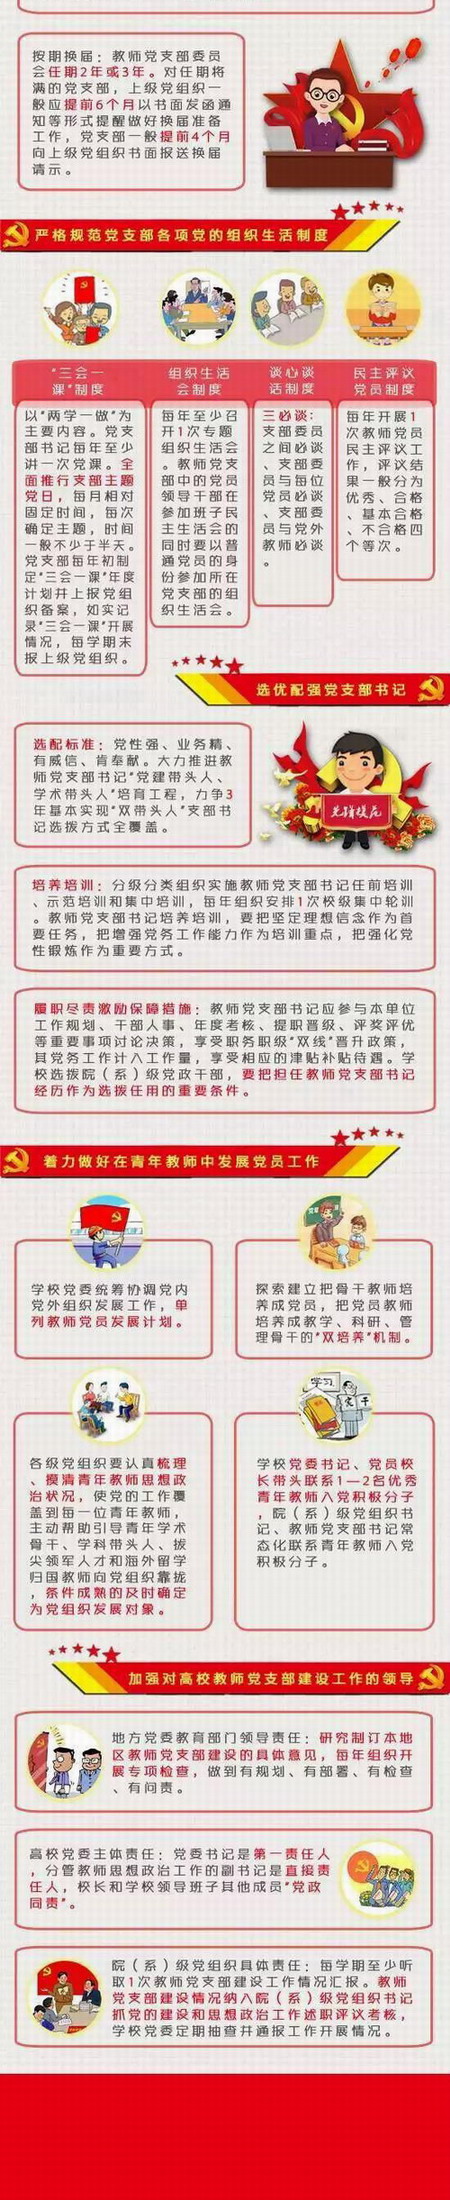 【法律法规】中共教育部党组关于加强新形势下高校教师党支部建设的意见